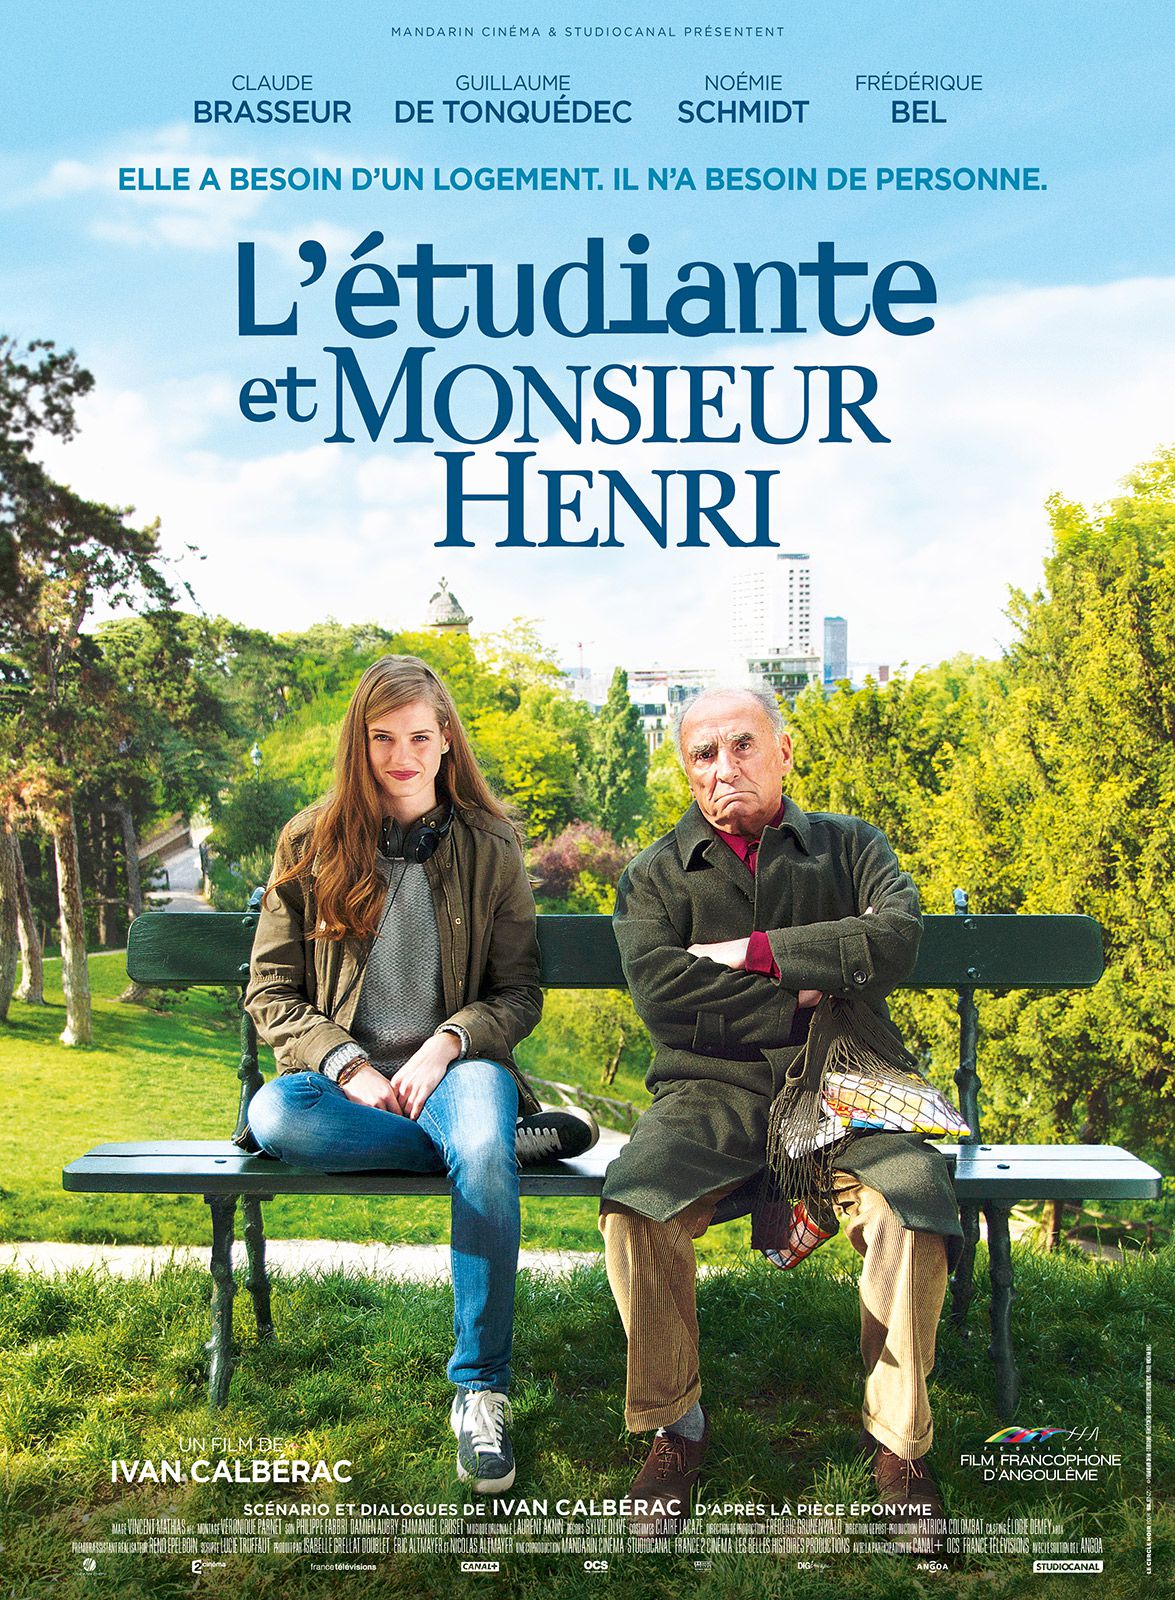 L'Etudiante et Monsieur Henri - Film (2015) streaming VF gratuit complet